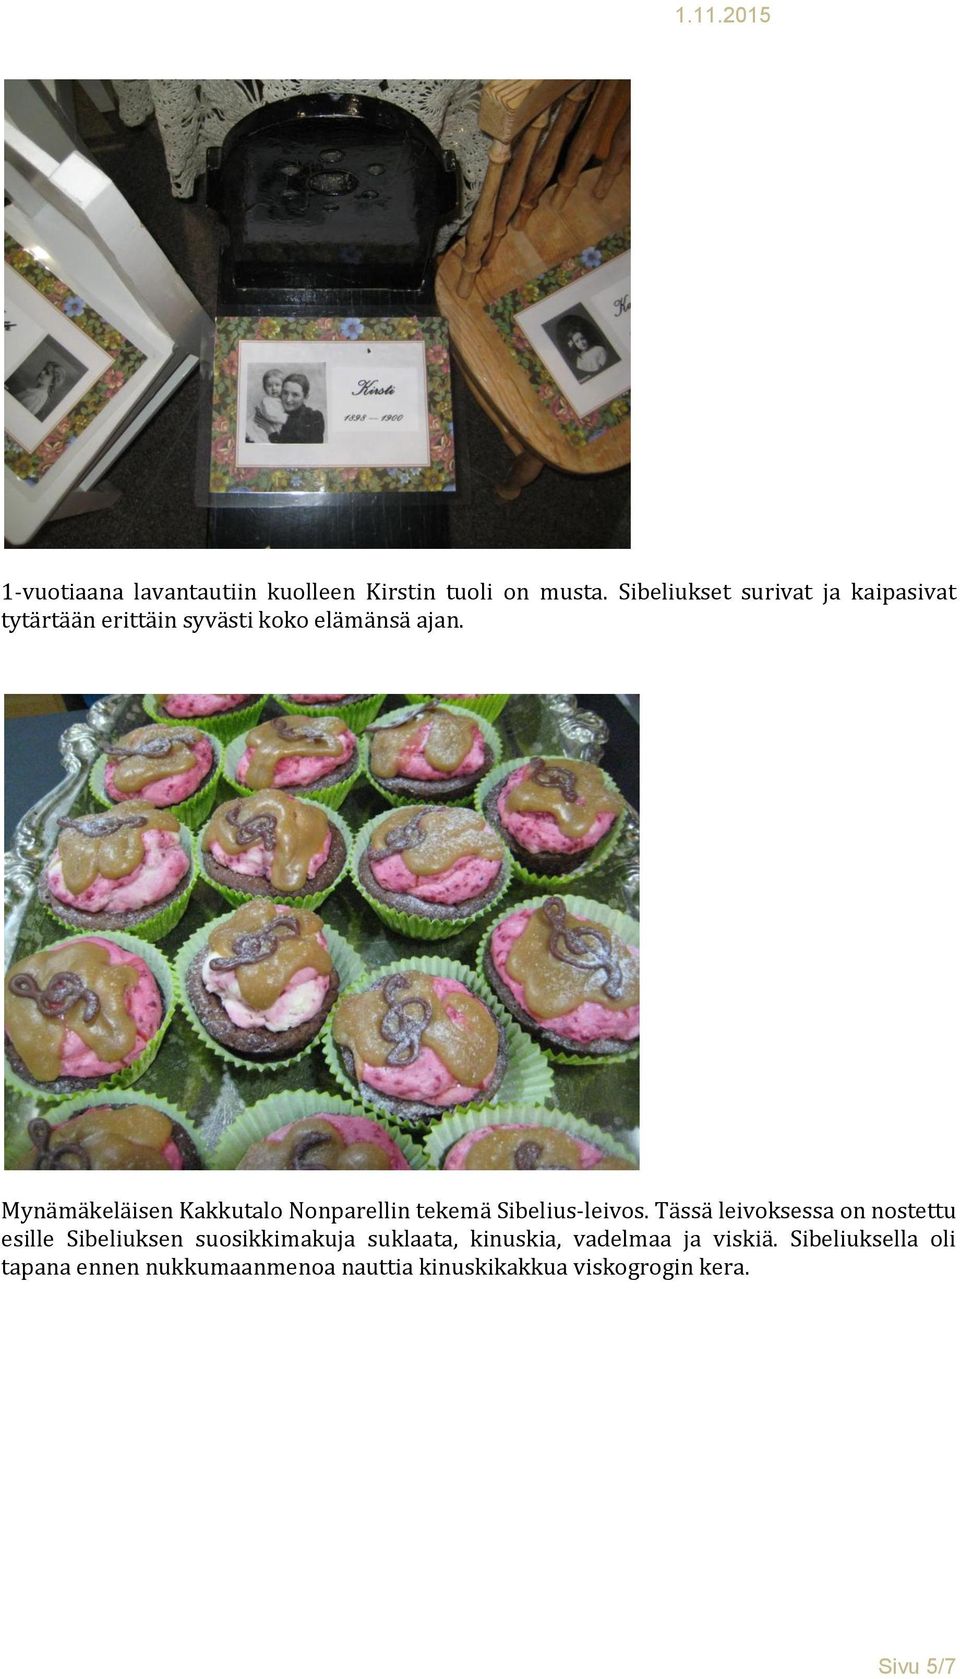 Mynämäkeläisen Kakkutalo Nonparellin tekemä Sibelius-leivos.